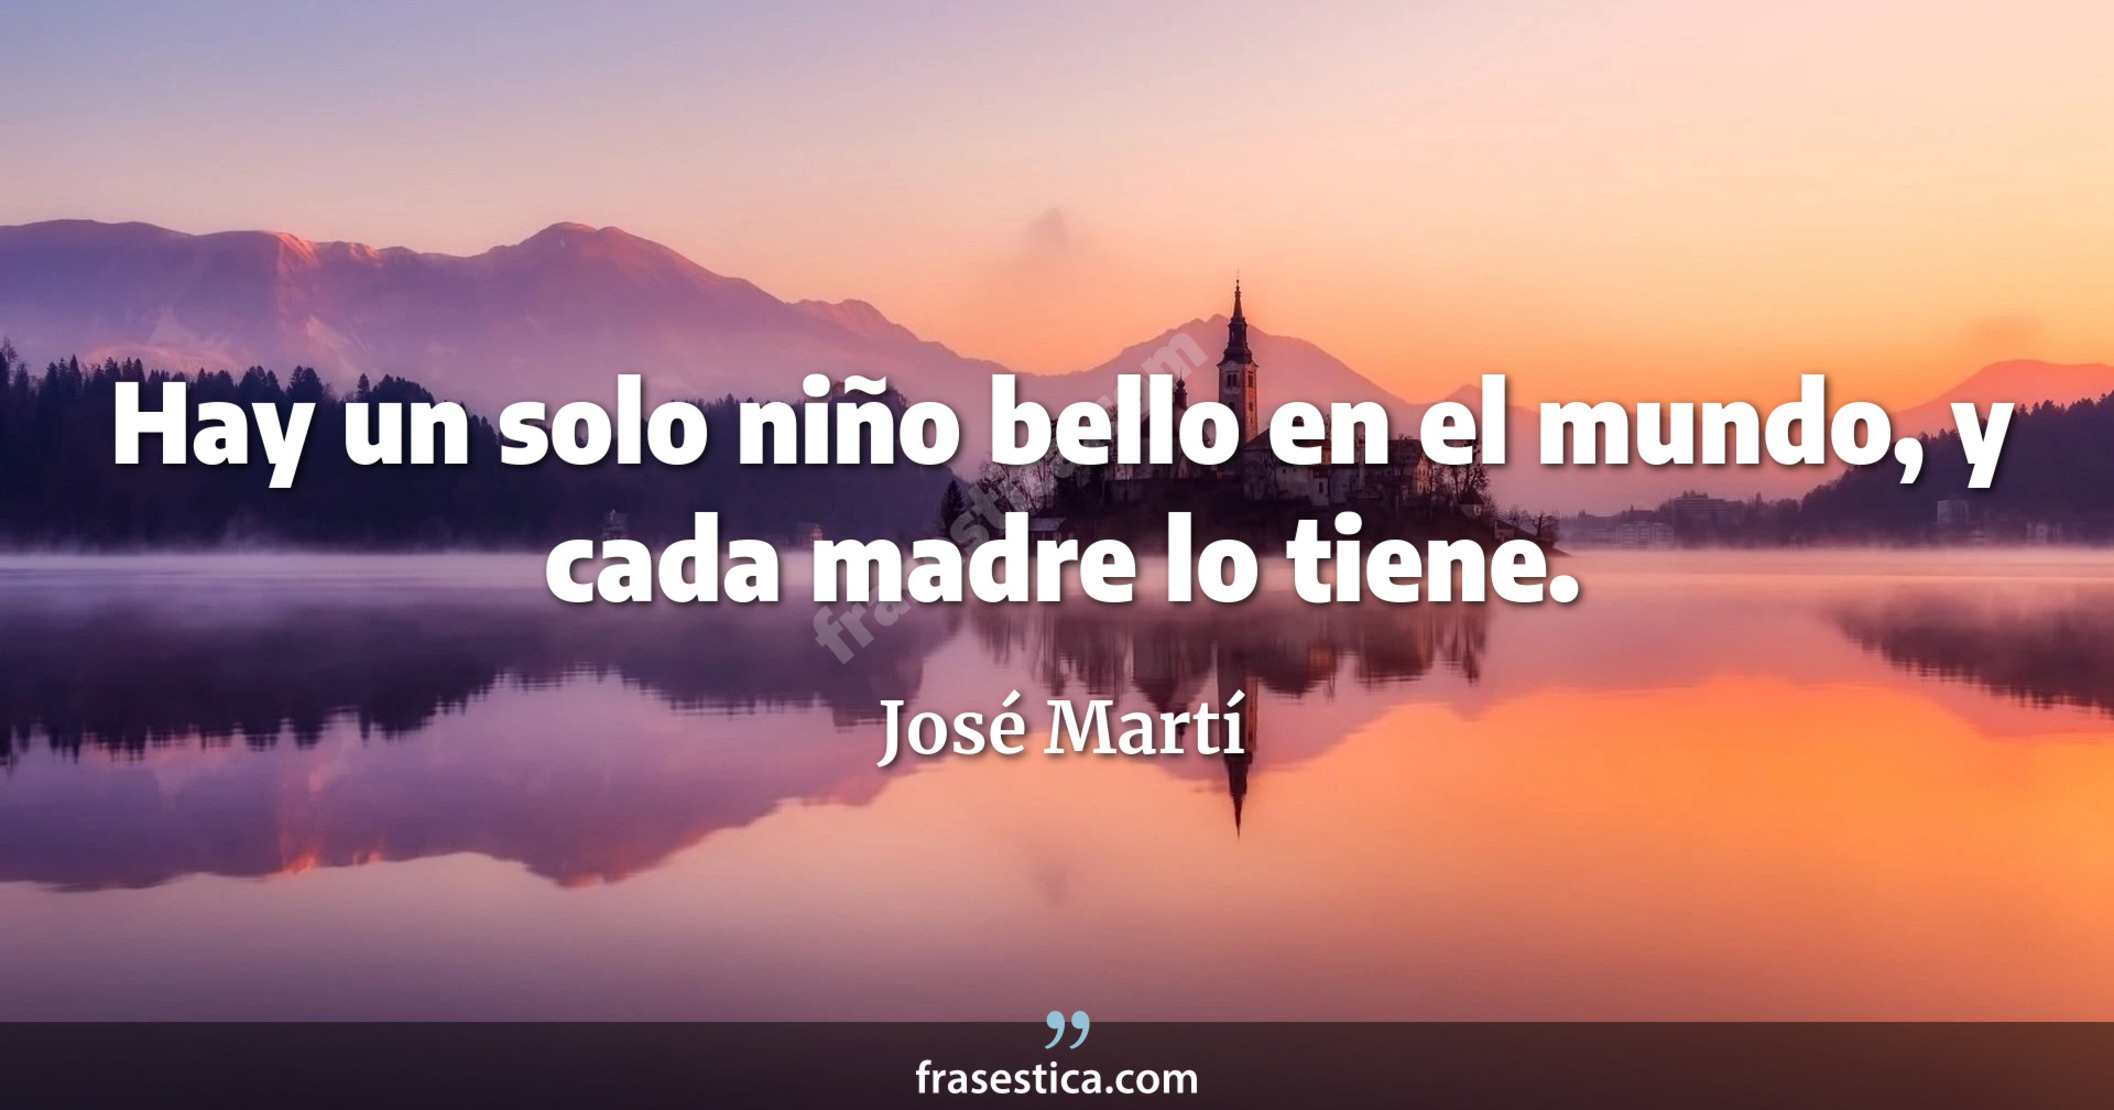 Hay un solo niño bello en el mundo, y cada madre lo tiene. - José Martí